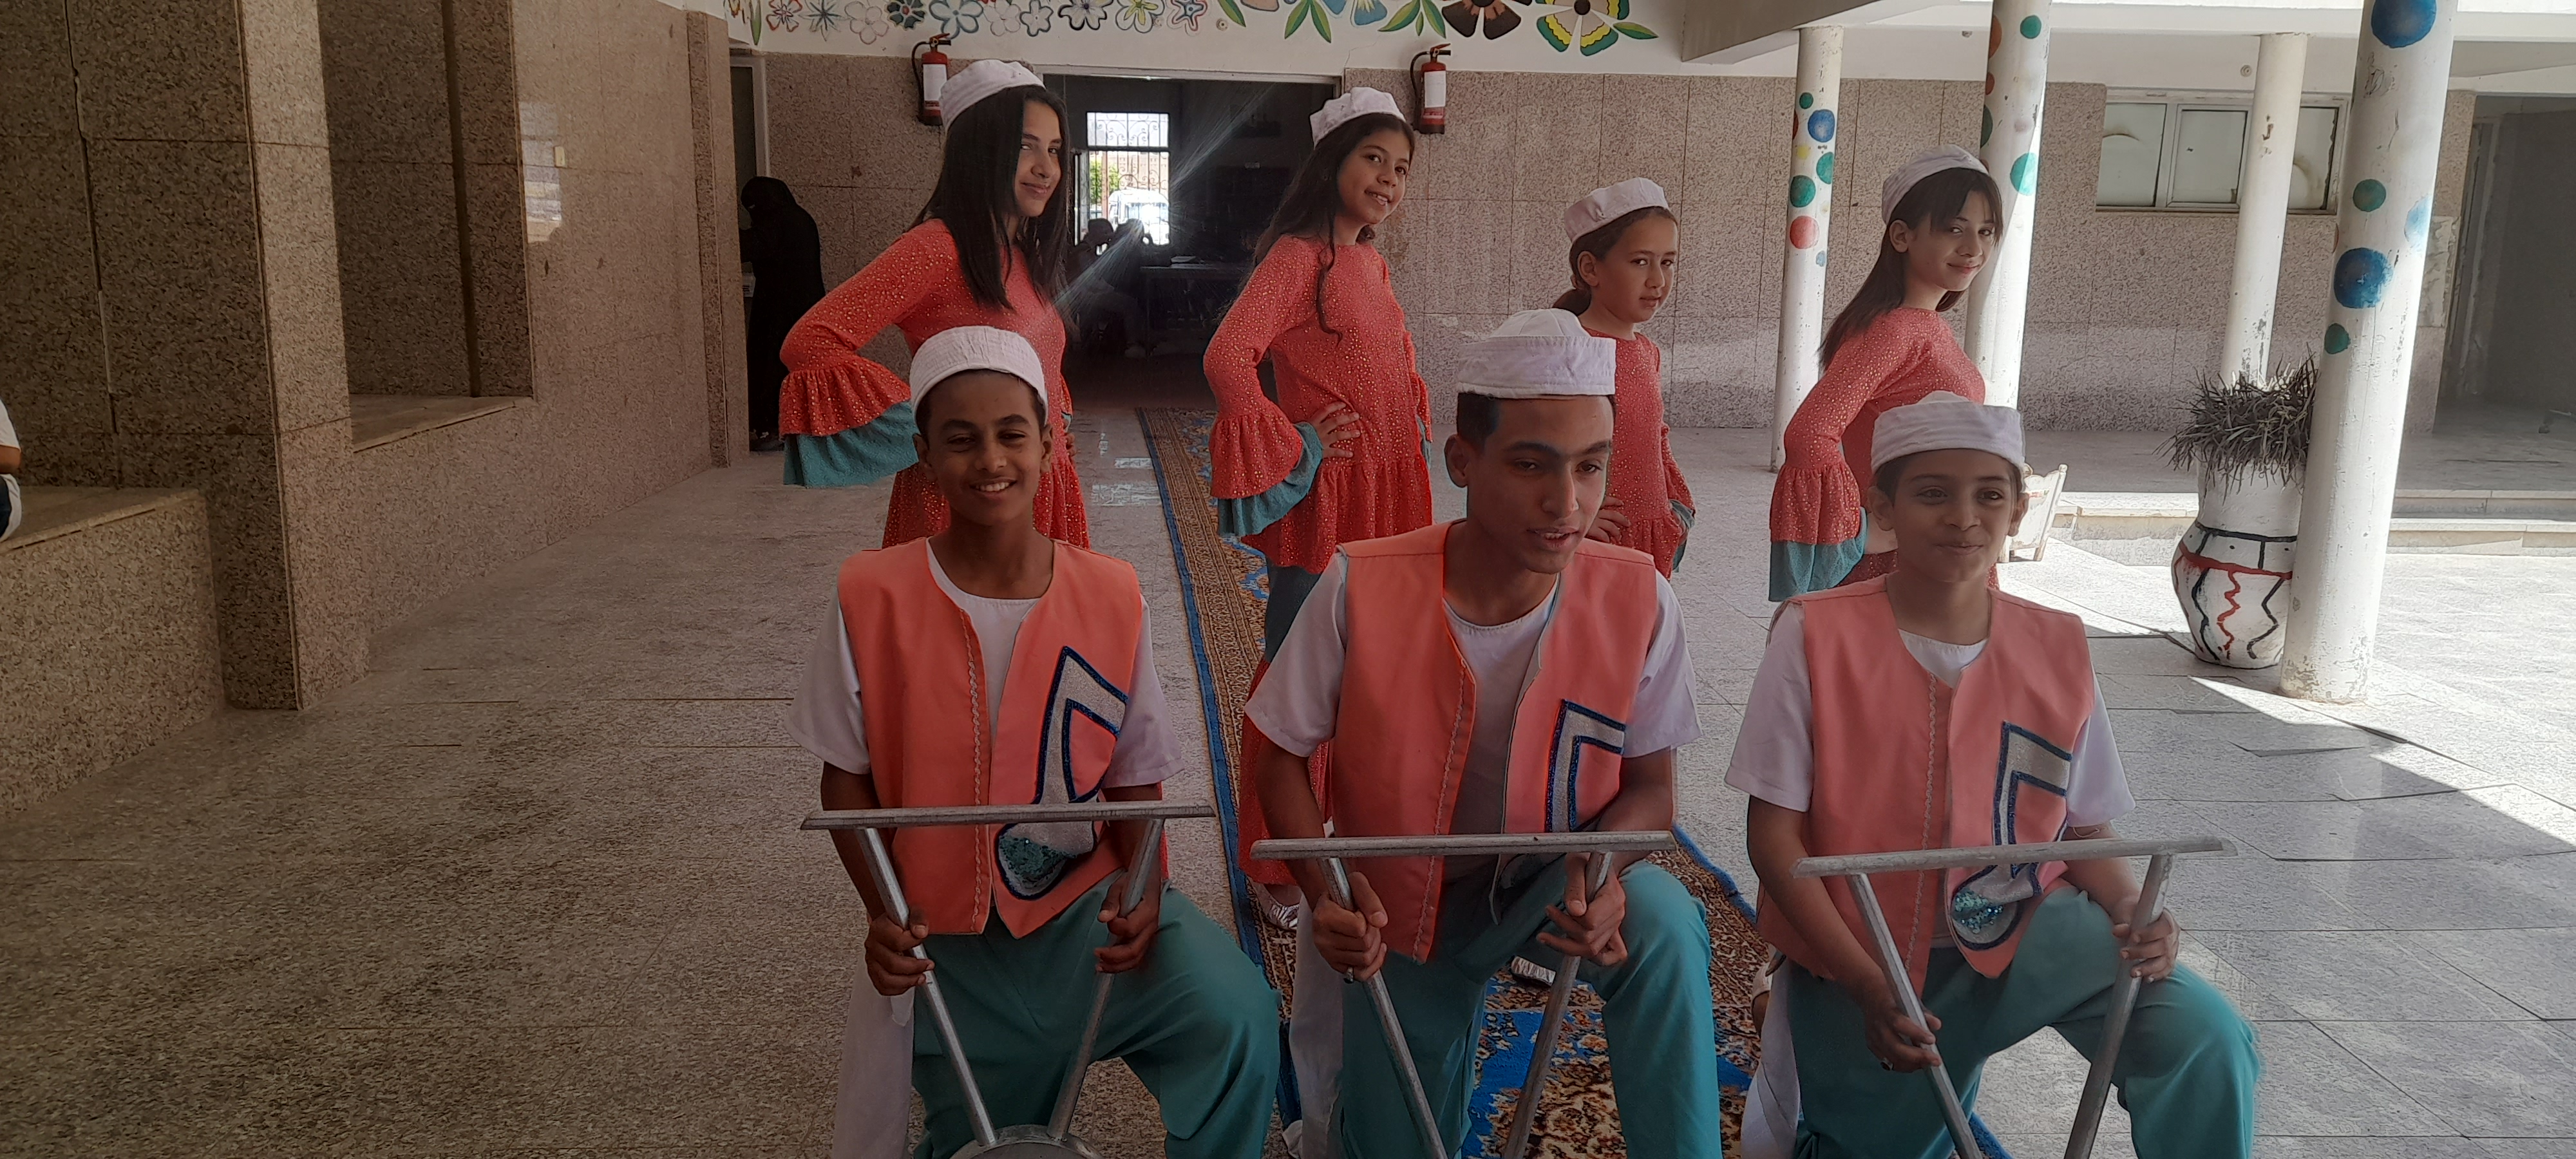 الفرقة البدوية الشعبية تستقبل وزيرة الثقافة ومحافظ جنوب سيناء (2)